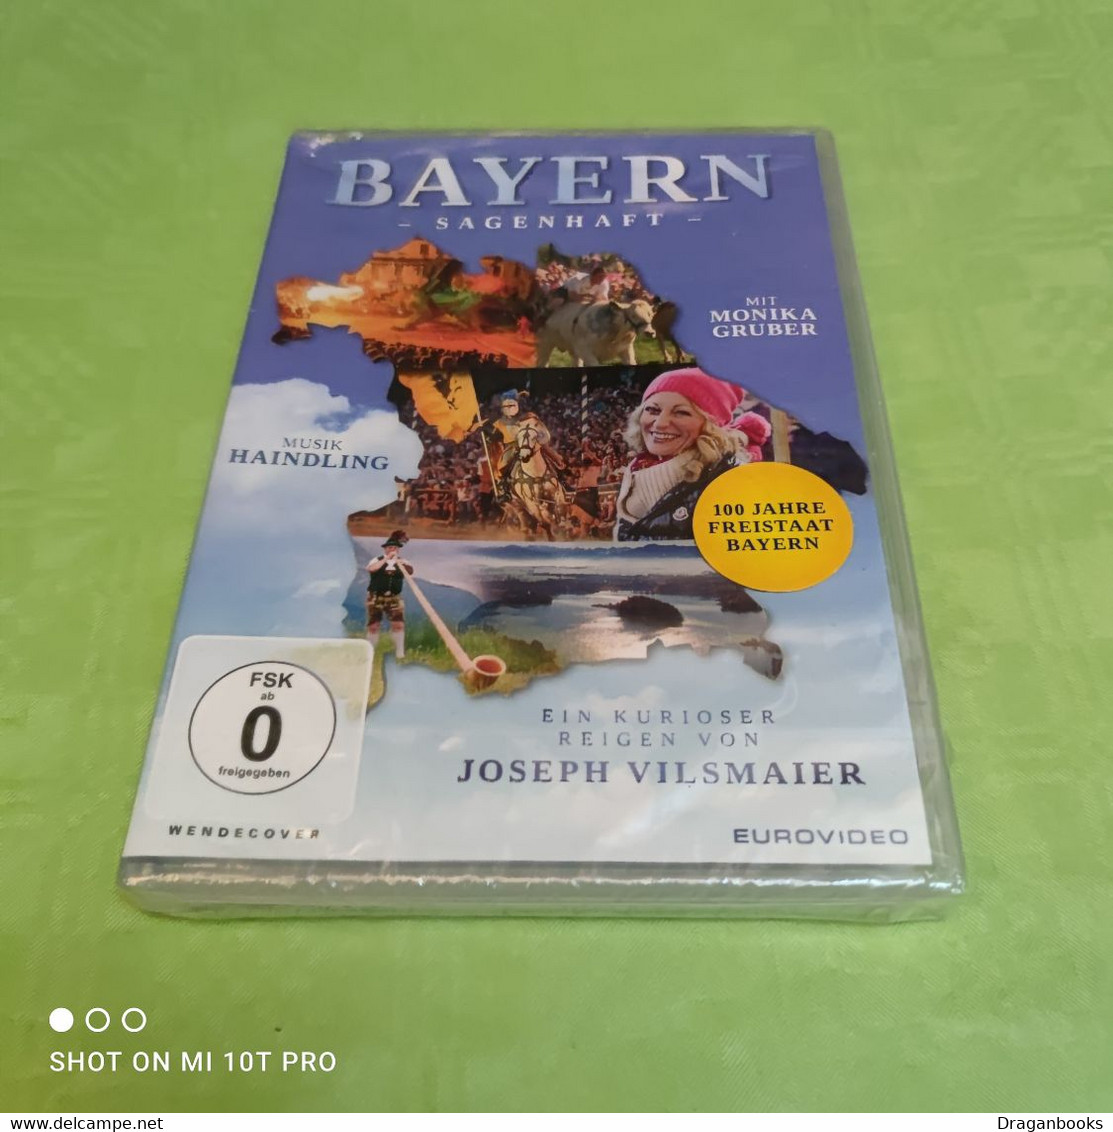 Bayern Sagenhaft - Reizen